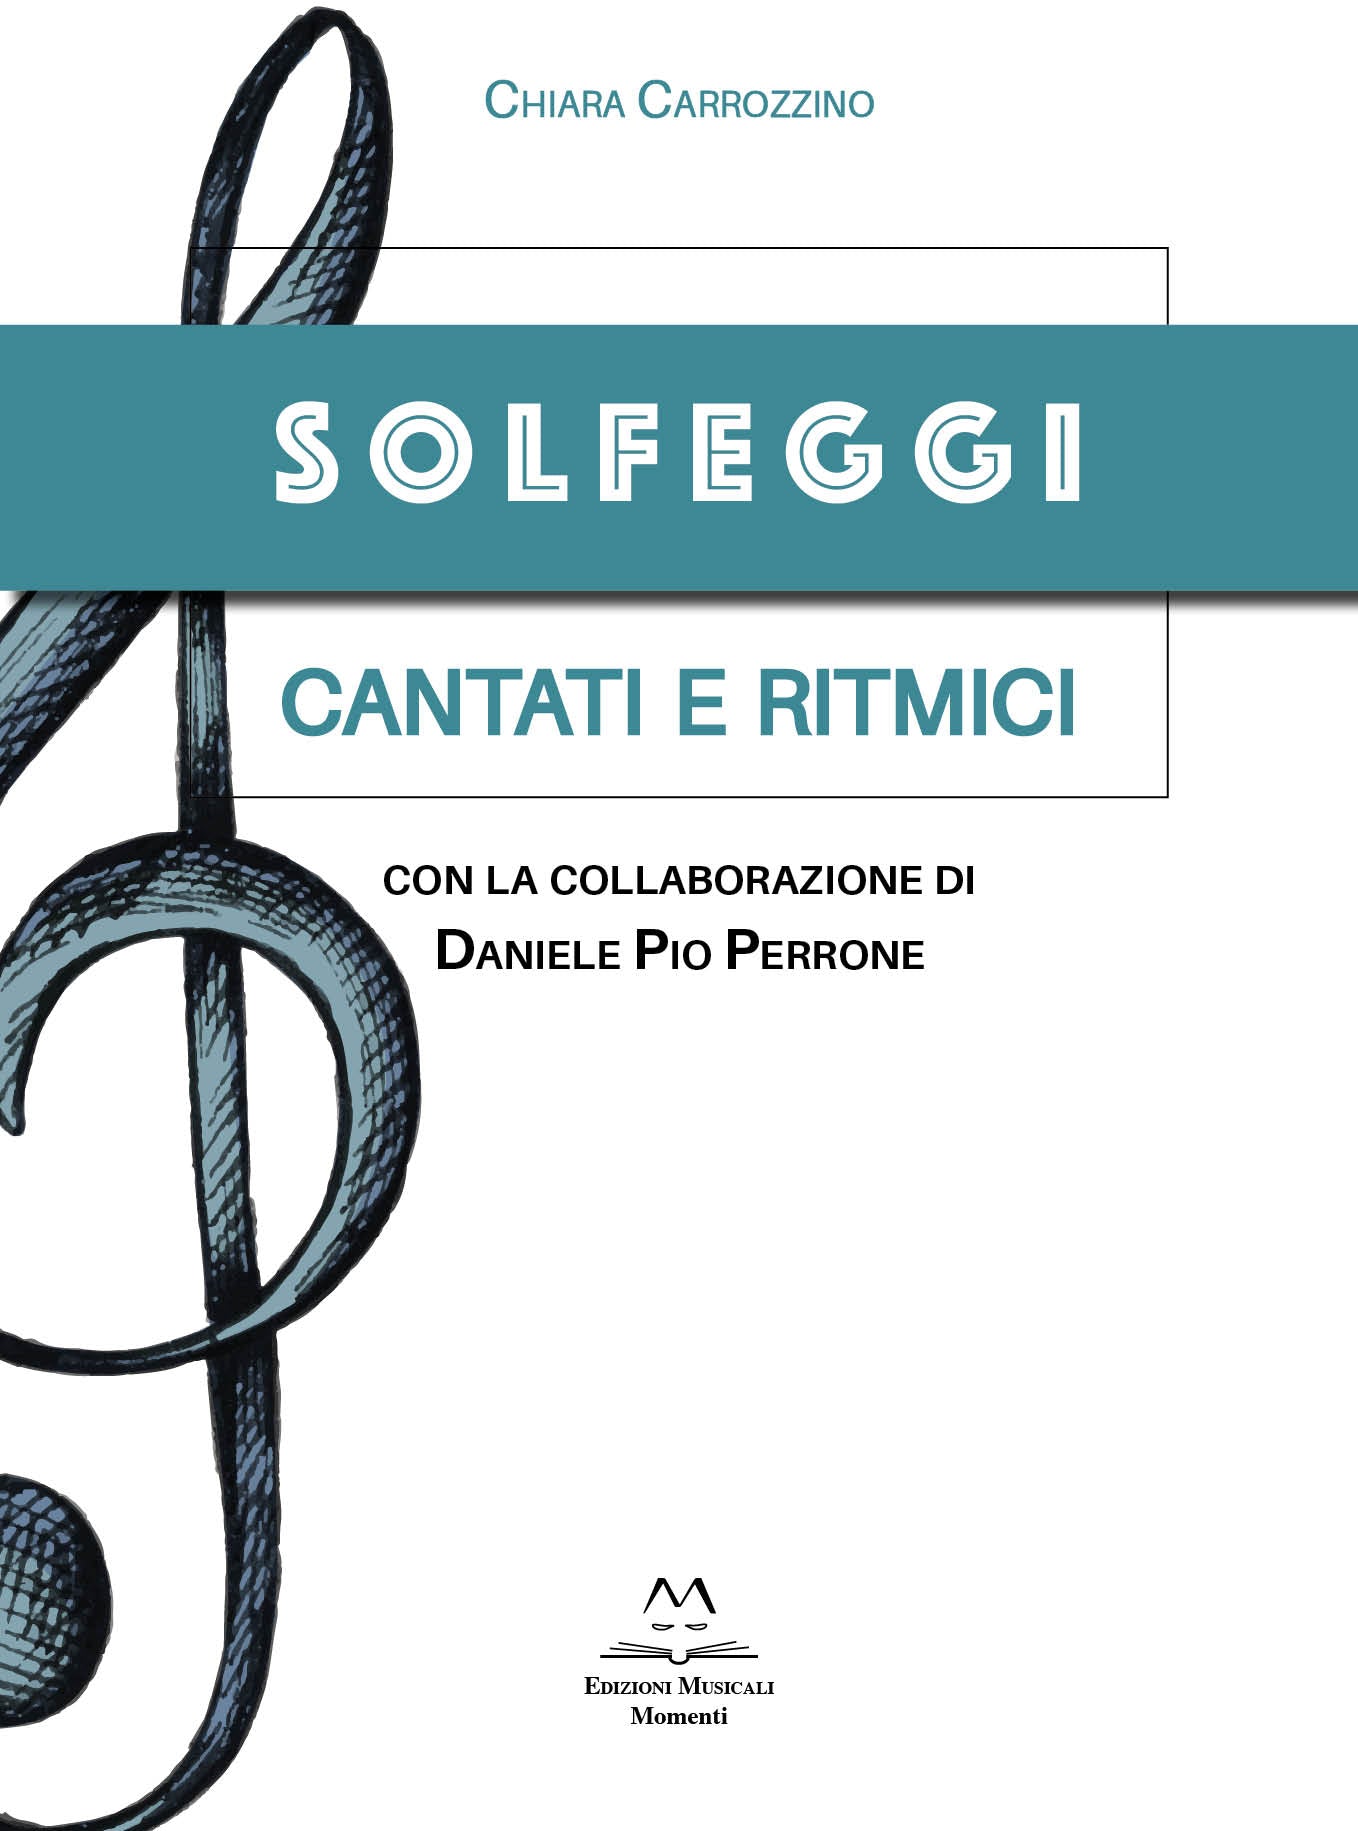 Solfeggi cantati e ritmici di Chiara Carrozzino